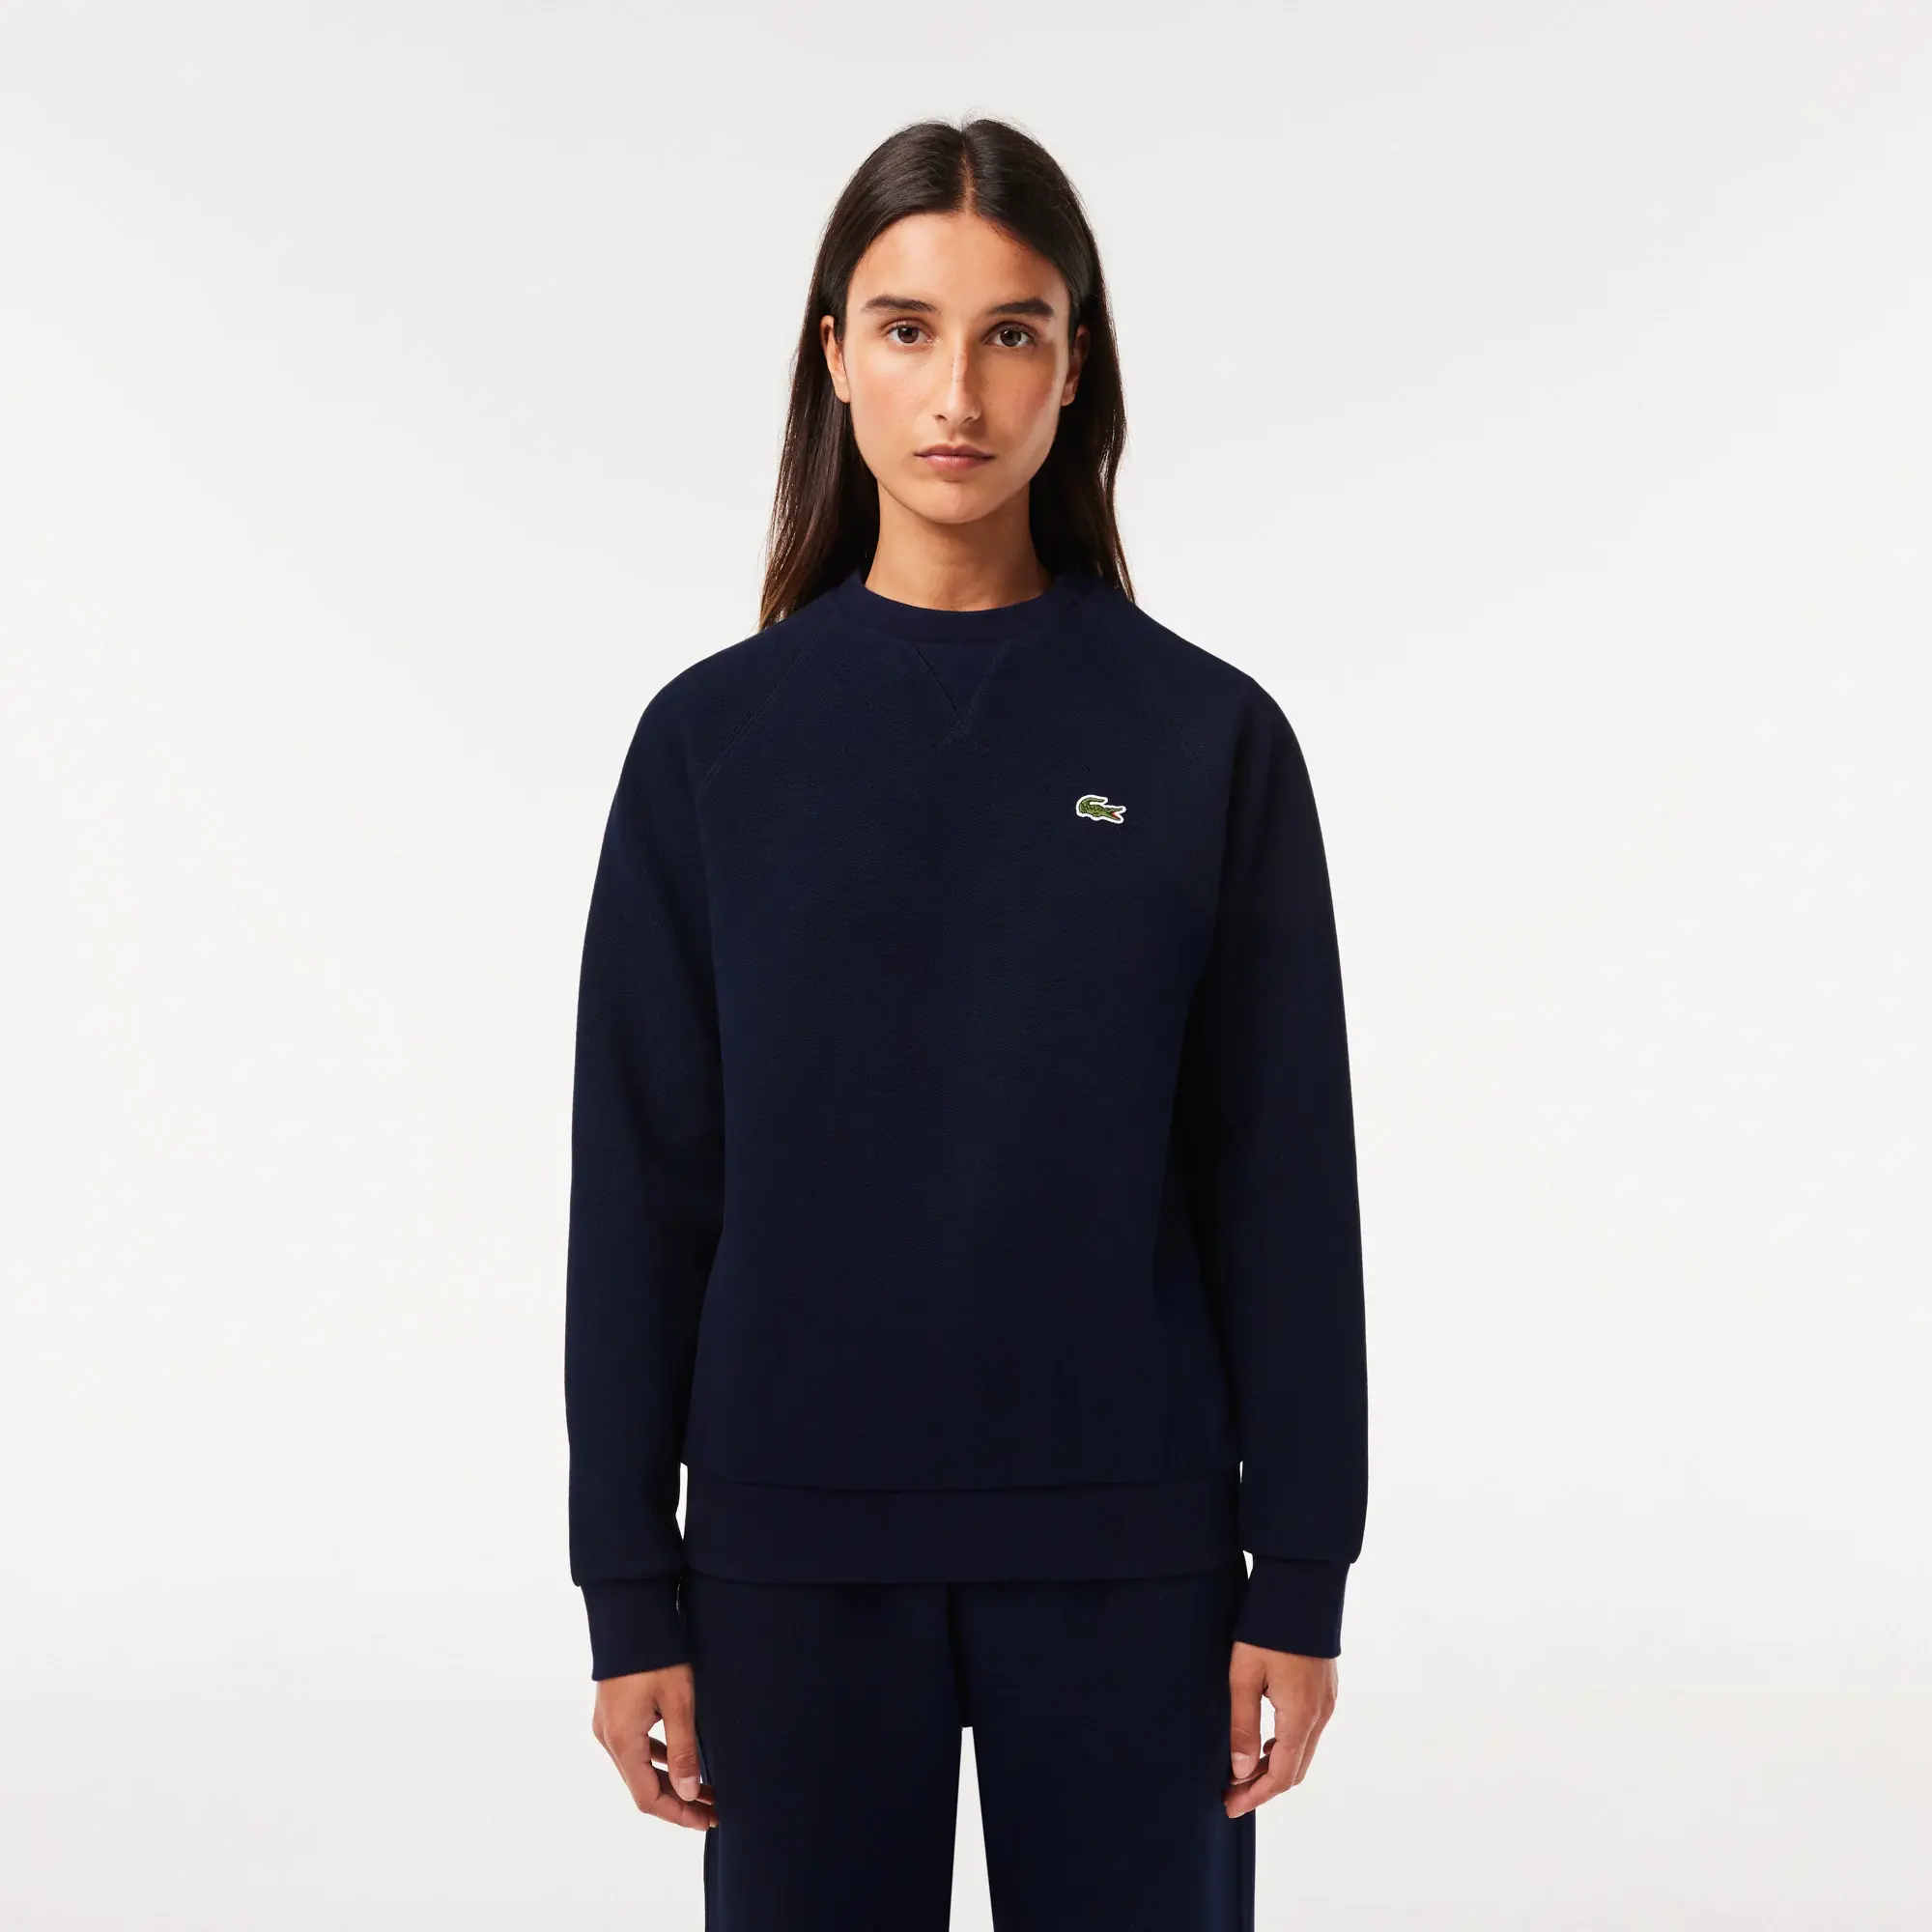 Lacoste Women’s Crew Neck Piqué Sweatshirt. 1